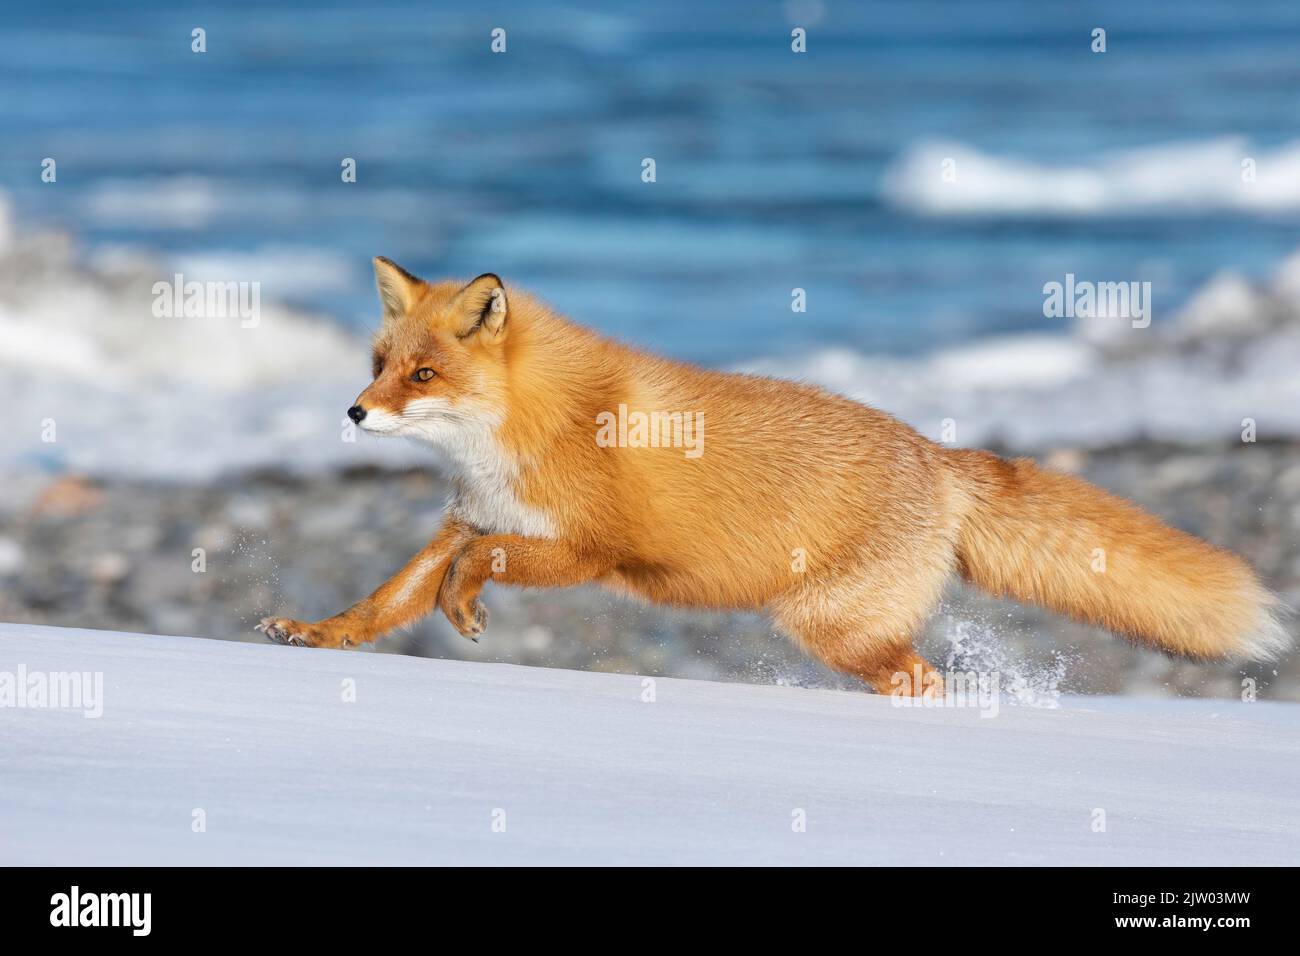 Ezo Red Fox  (Vulpes vulpes schrencki) running in snow, Hokkaido, Japan Stock Photo